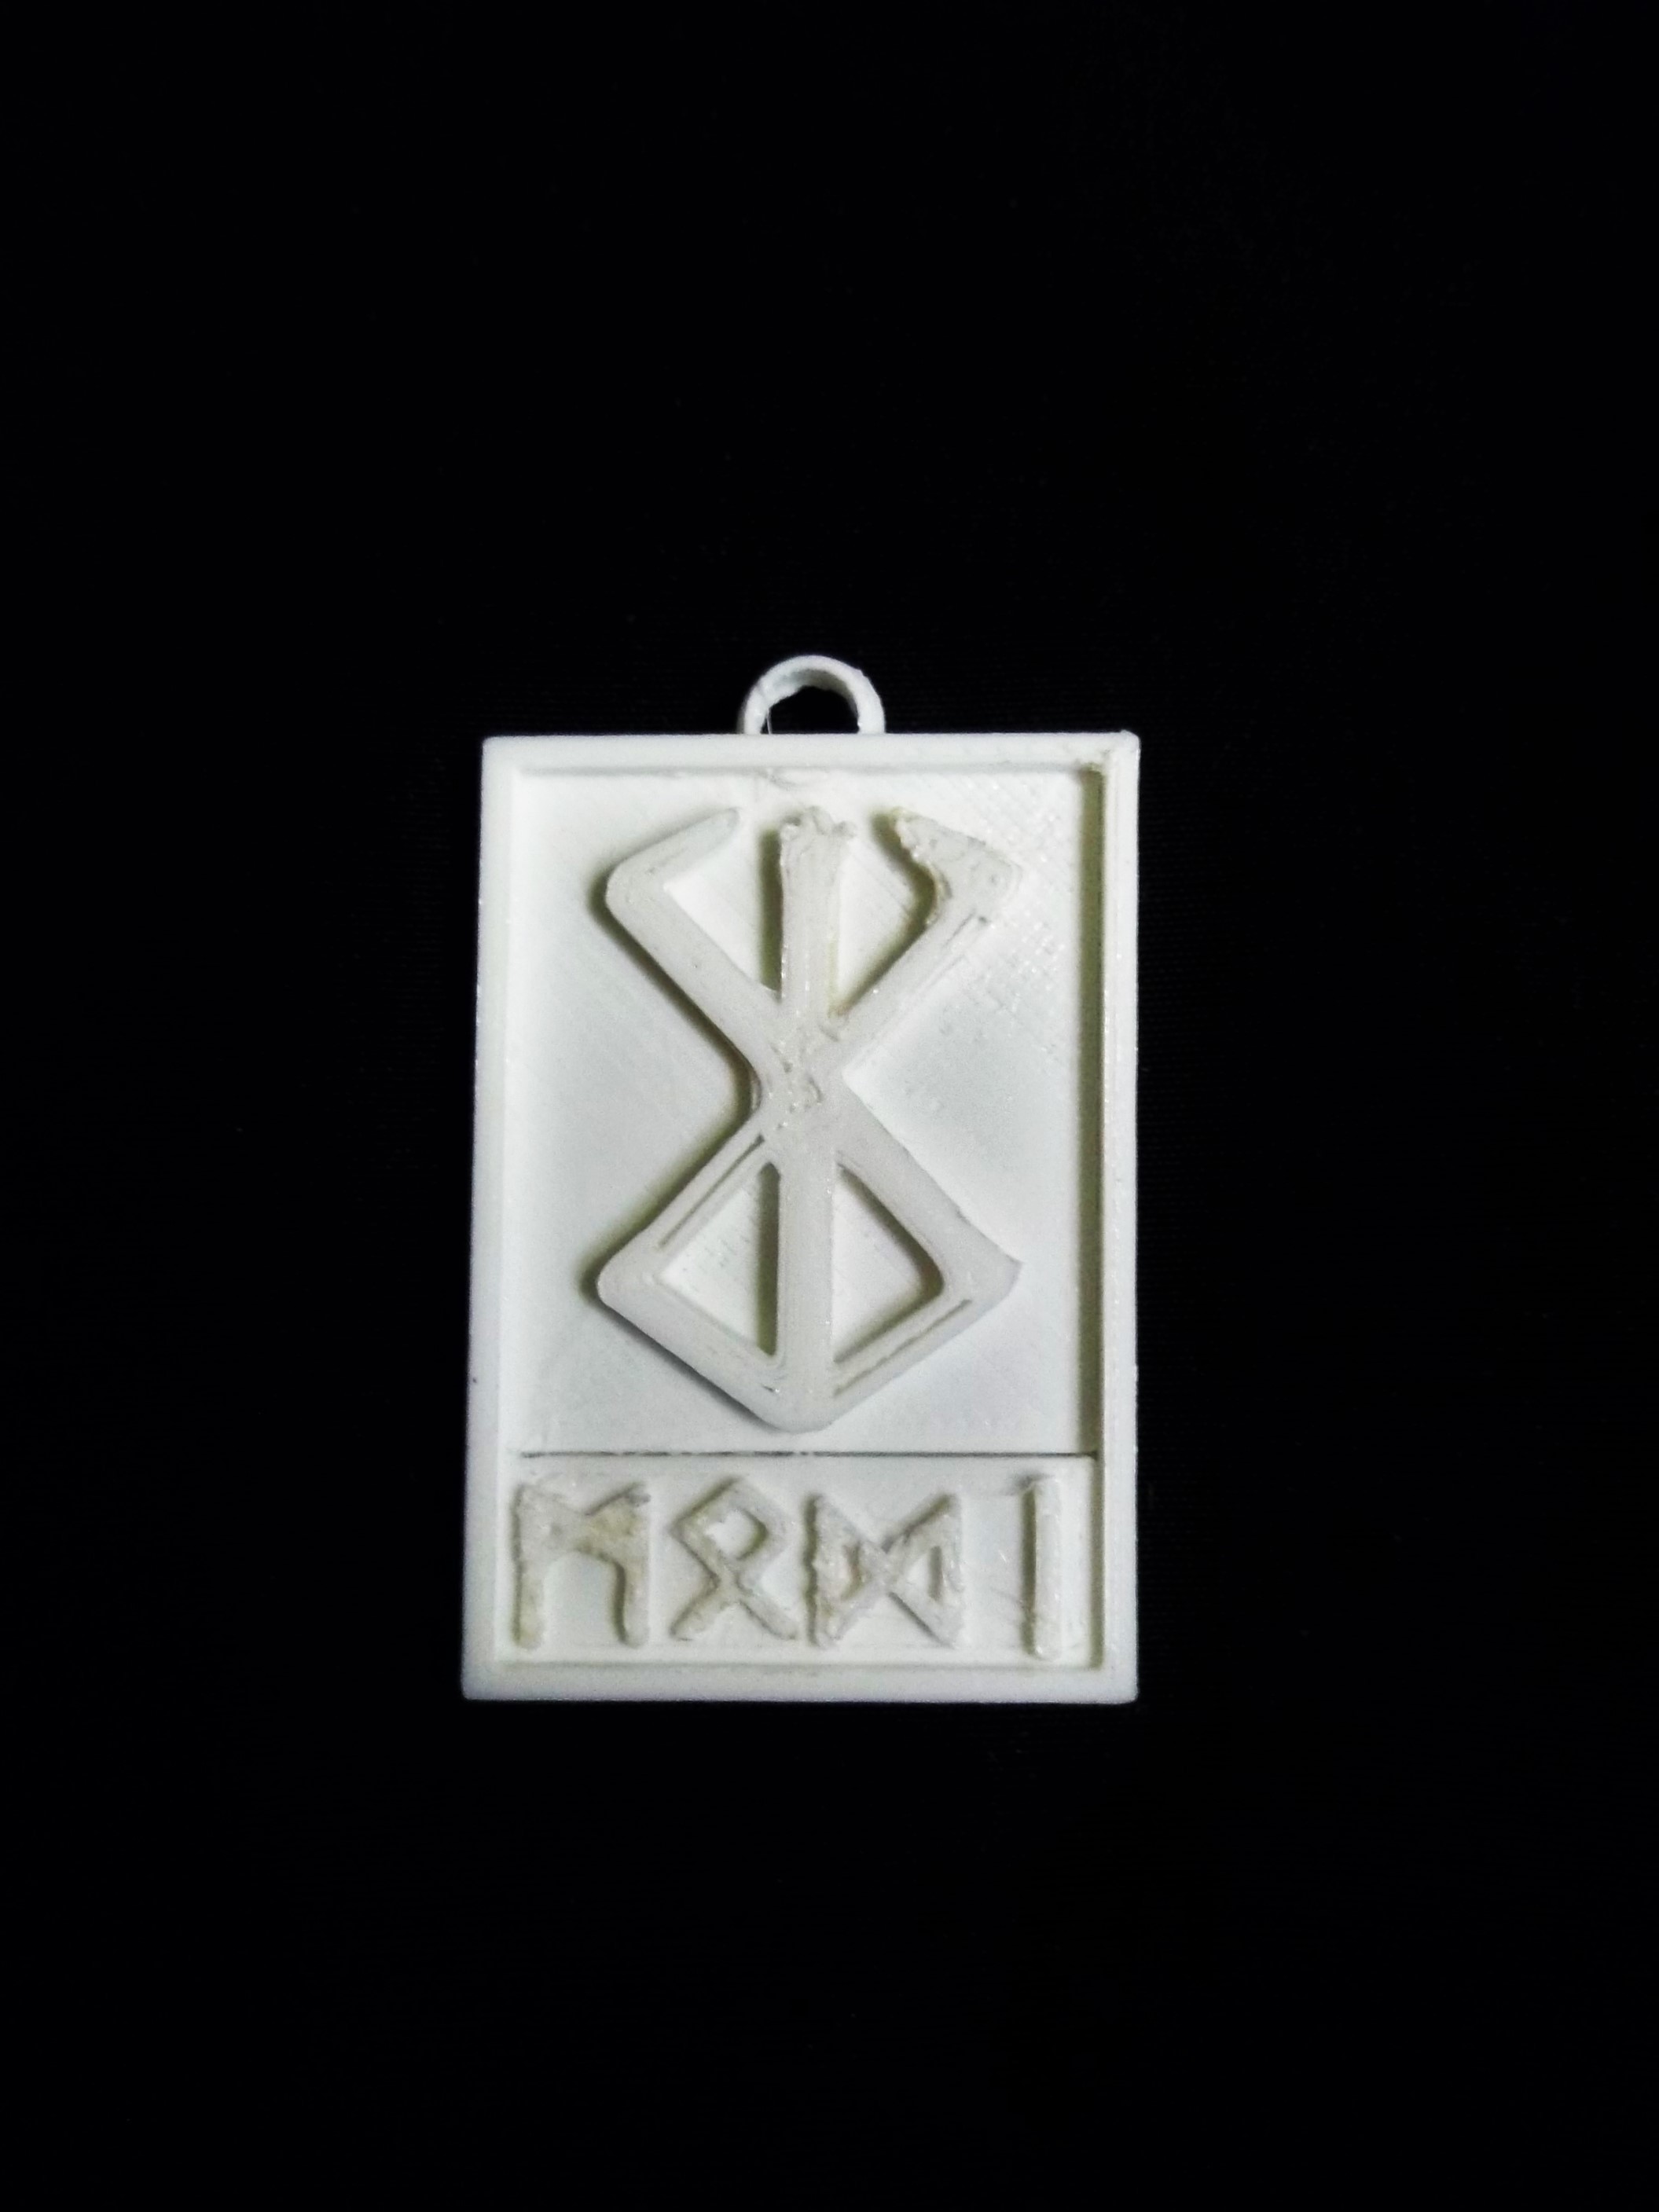 3D Printed BERSERKER rune pendant by atarka | Pinshape